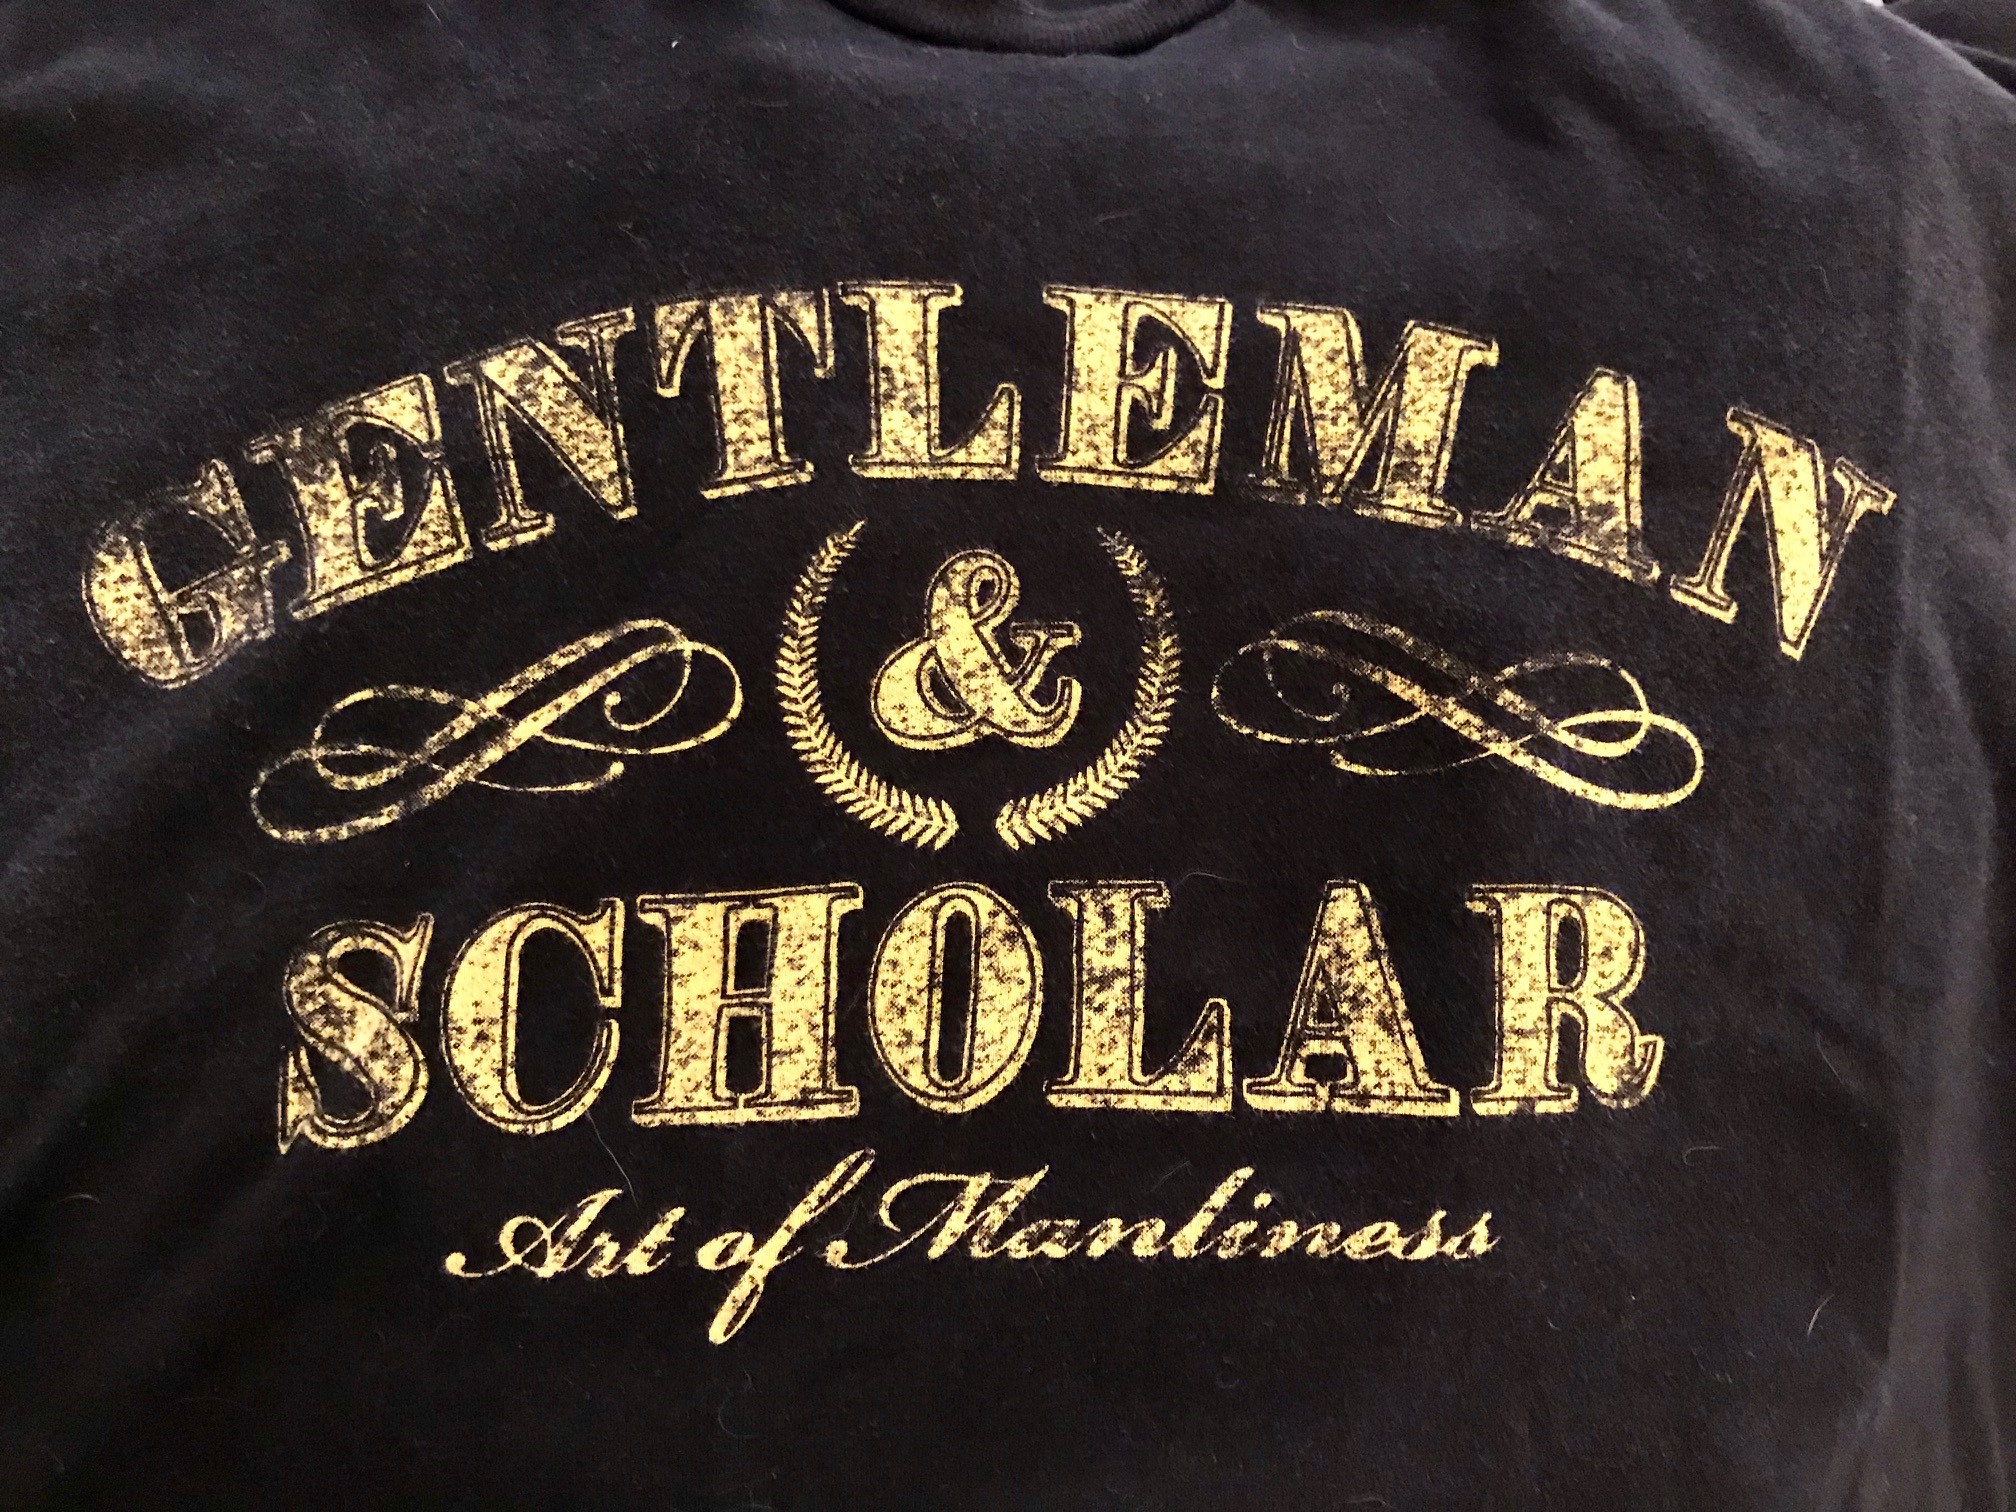 Scholar and a Gentleman tee shirt.jpg